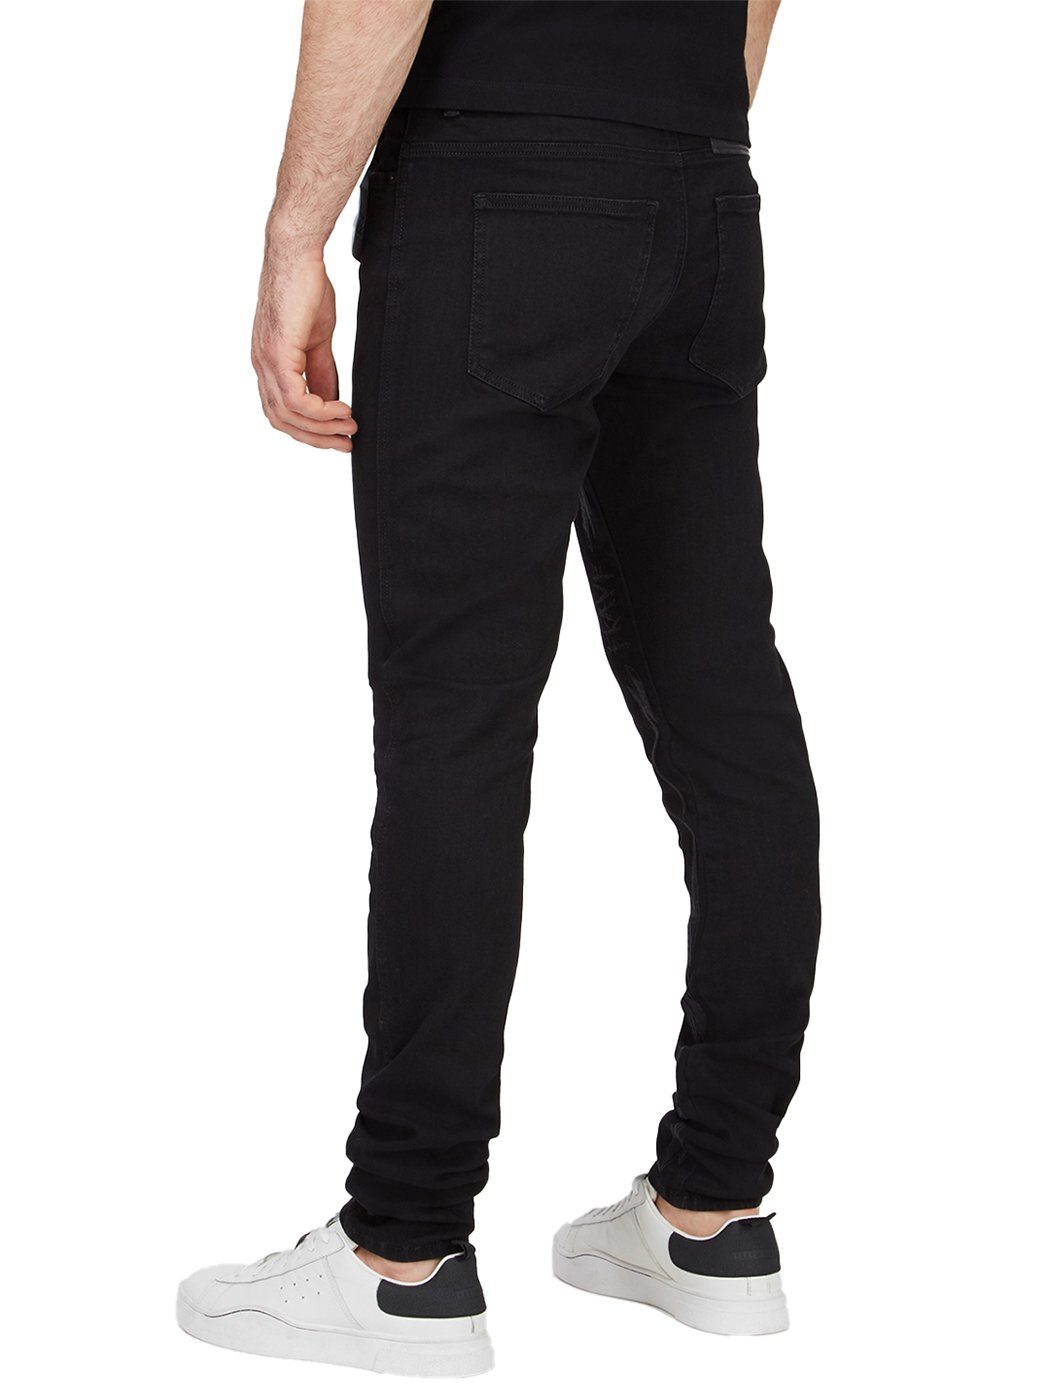 Skinny-fit-Jeans Stretch Hose D-Istort-X Länge:30 Diesel - - 069TI